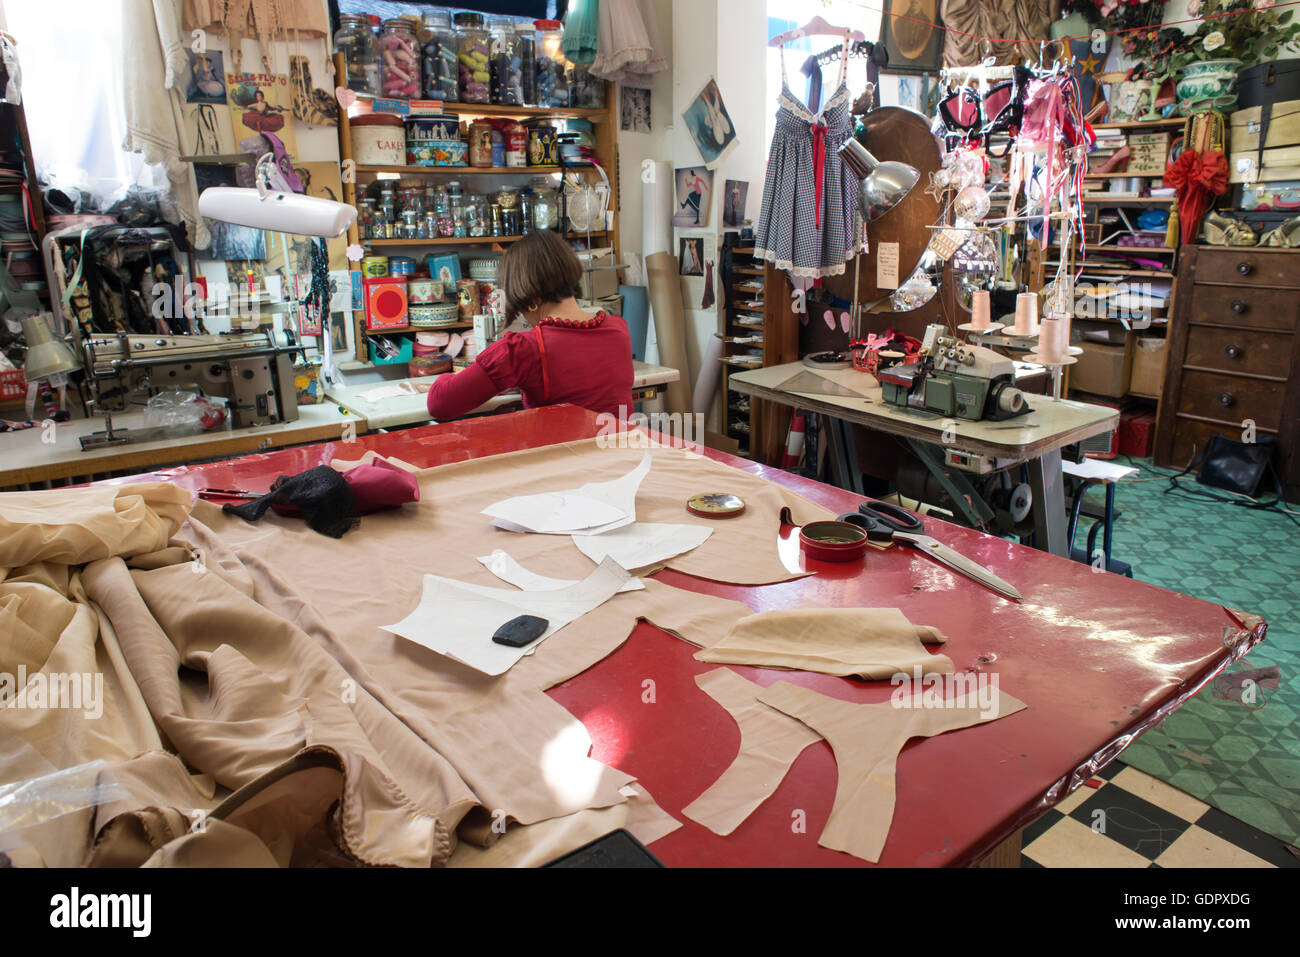 Un grande sarto il tavolo da taglio con sarta lavorando e tutto l'interno del negozio di abbigliamento in background. Foto Stock